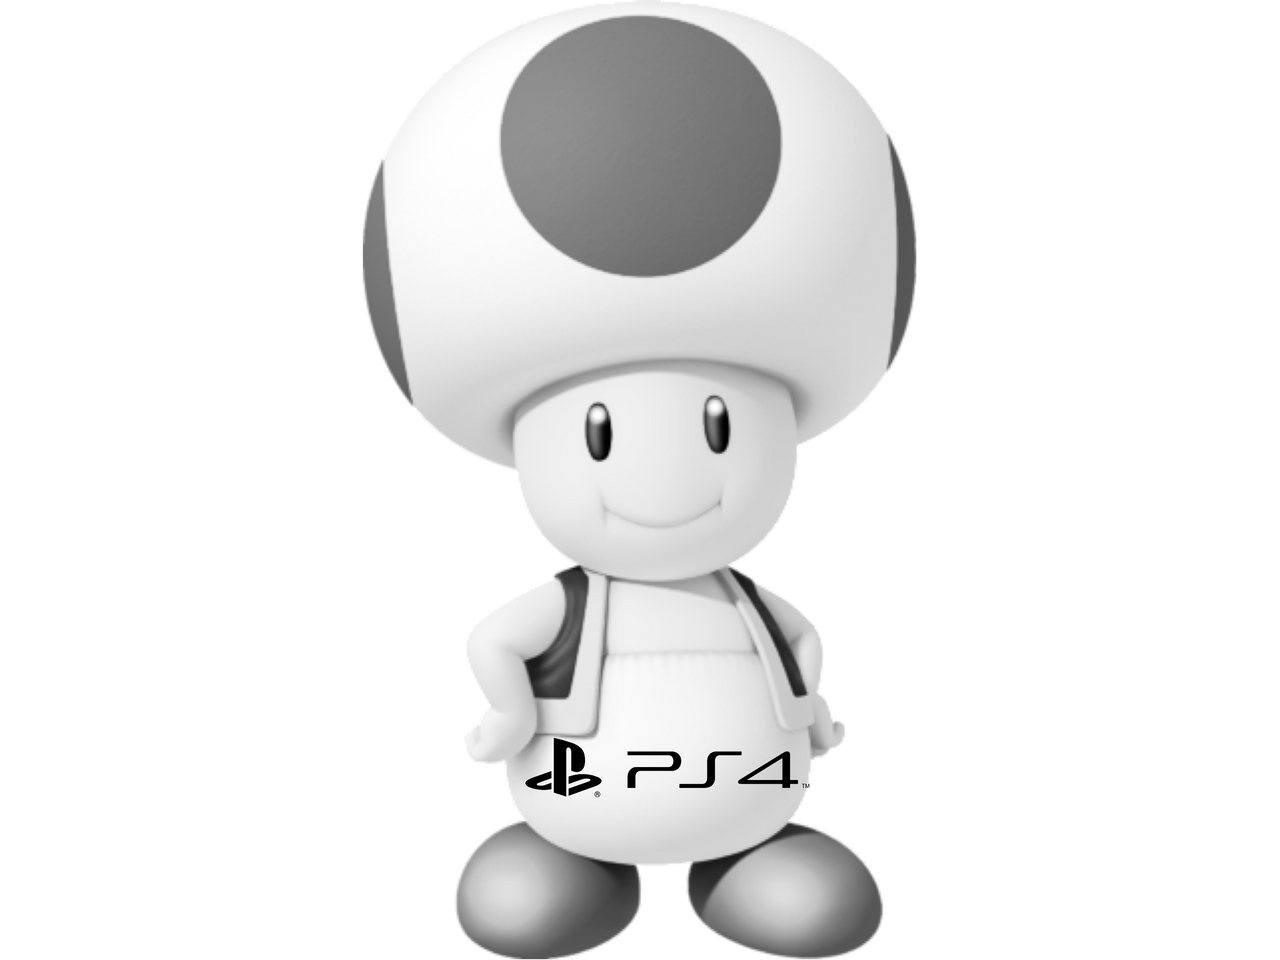 Super Mario 3D World - PlayStation 4 (PS4) by djshby on DeviantArt